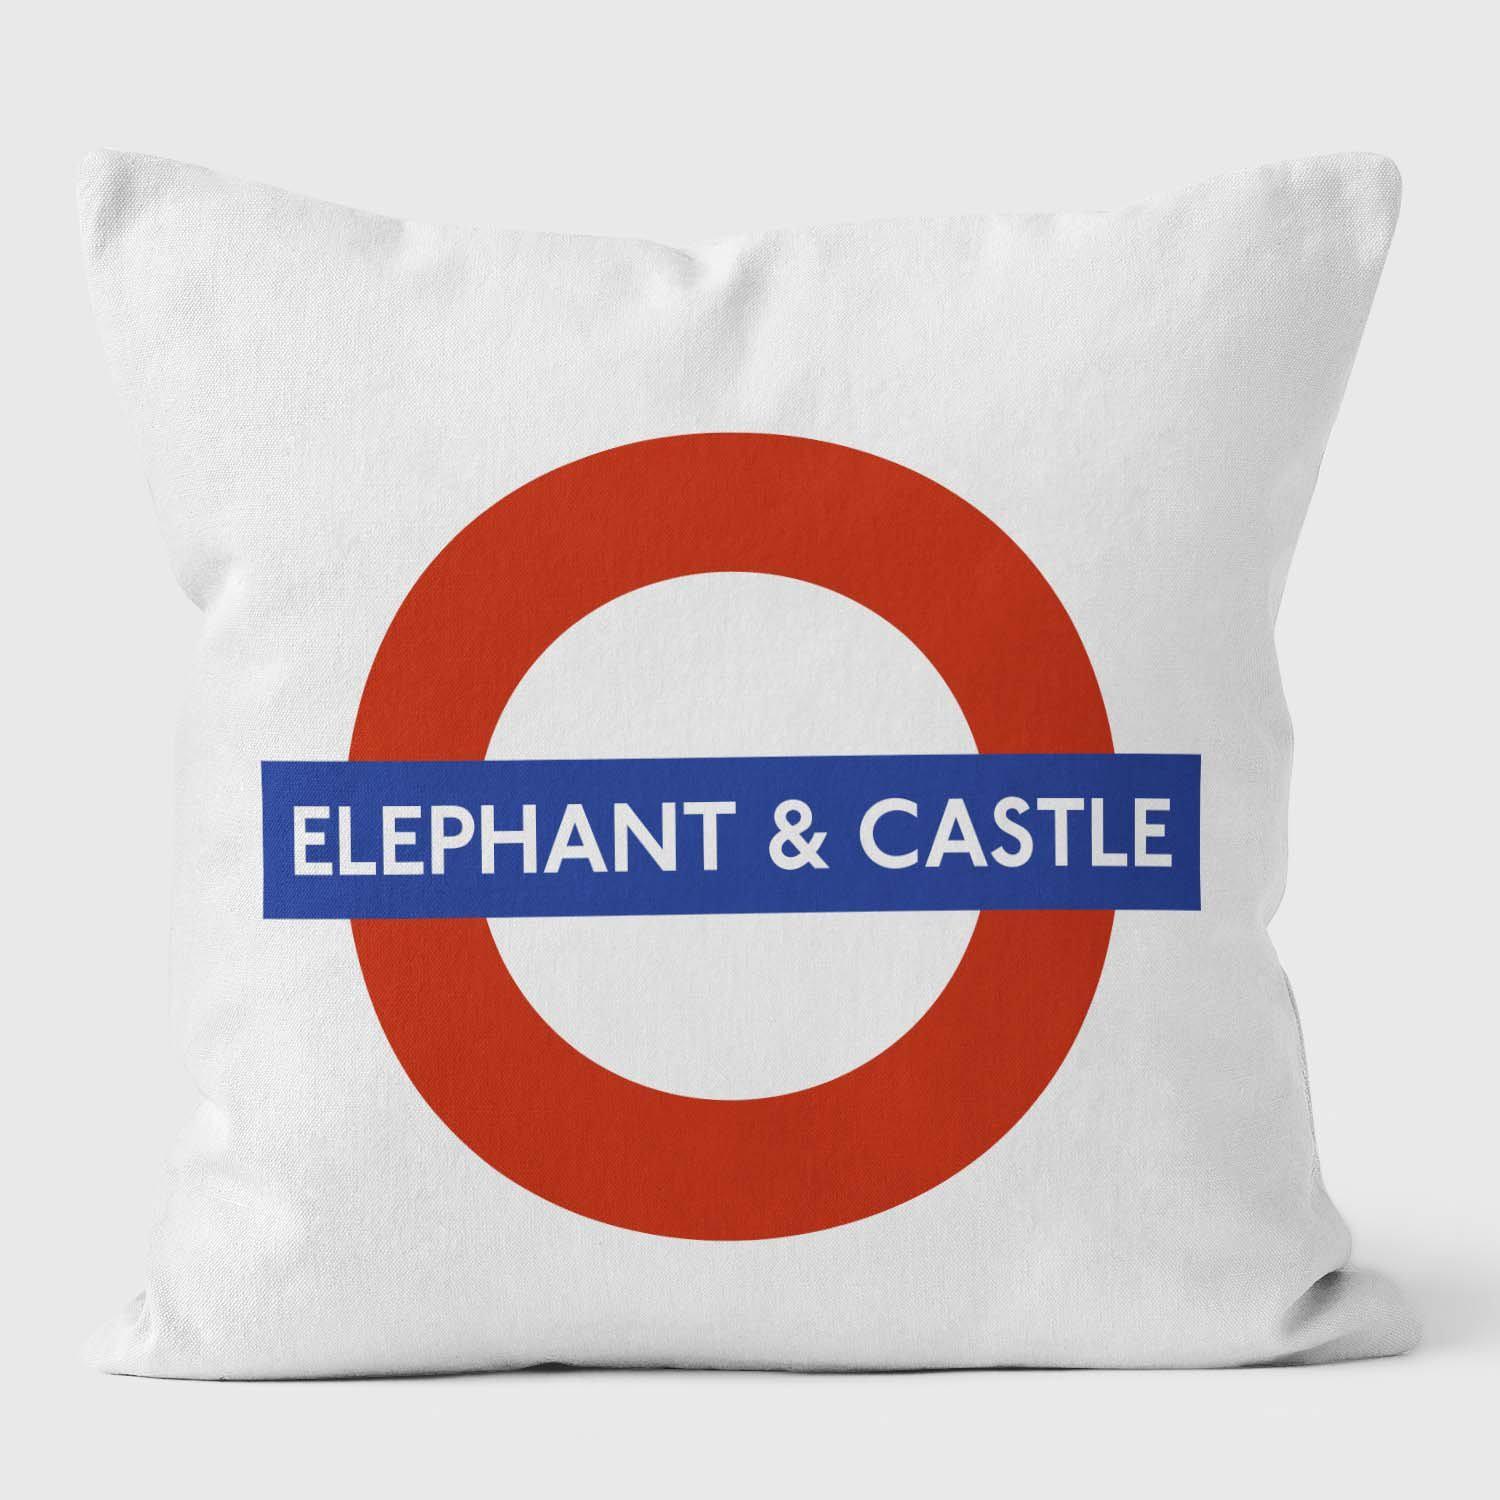 Elephant Castle London Underground Tube Station Roundel Cushion - Handmade Cushions UK - WeLoveCushions